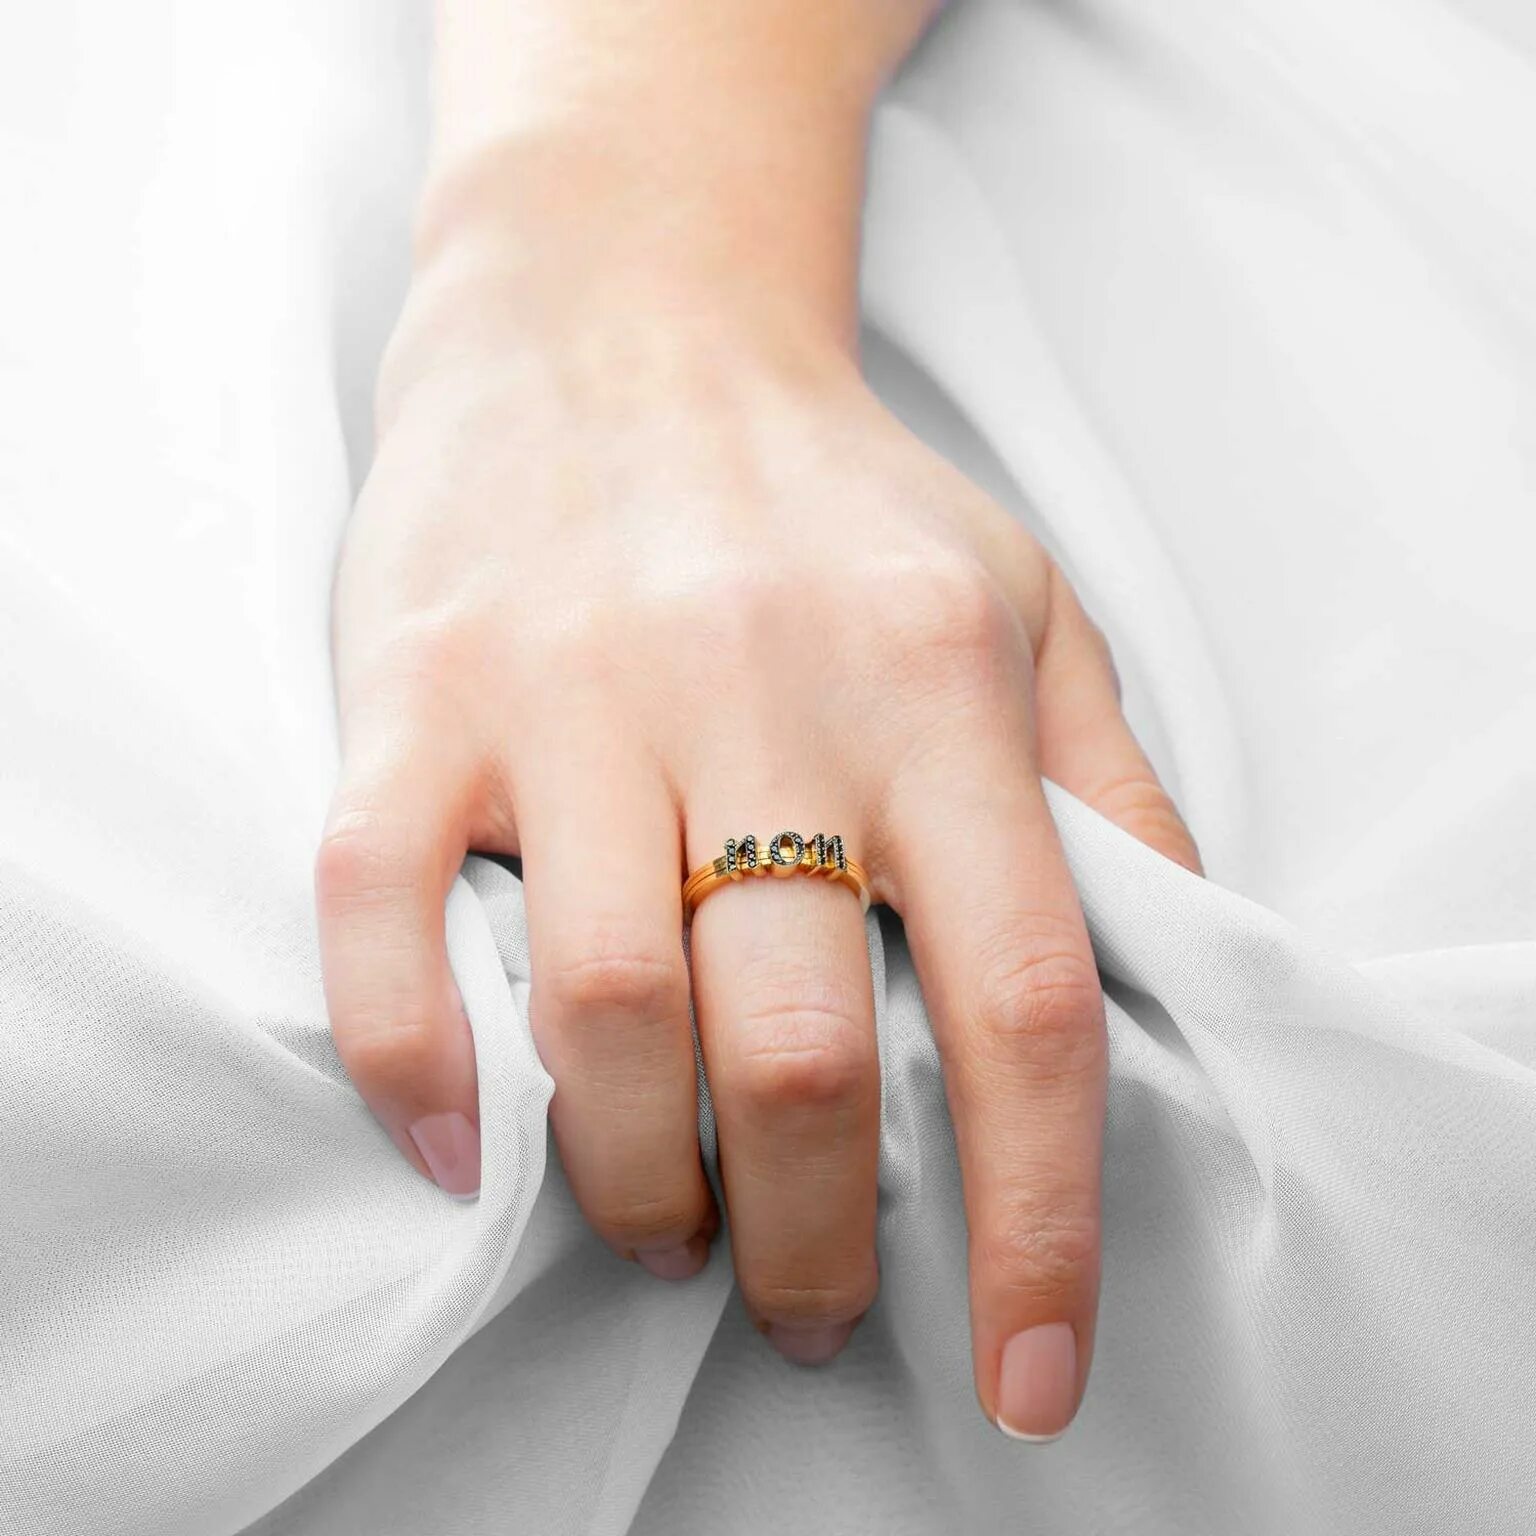 Обручальное кольцо на пальце. Свадебные кольца на пальцах. Кольцо для замужества. Обручальные кольца на руках. Замужние золотые кольца